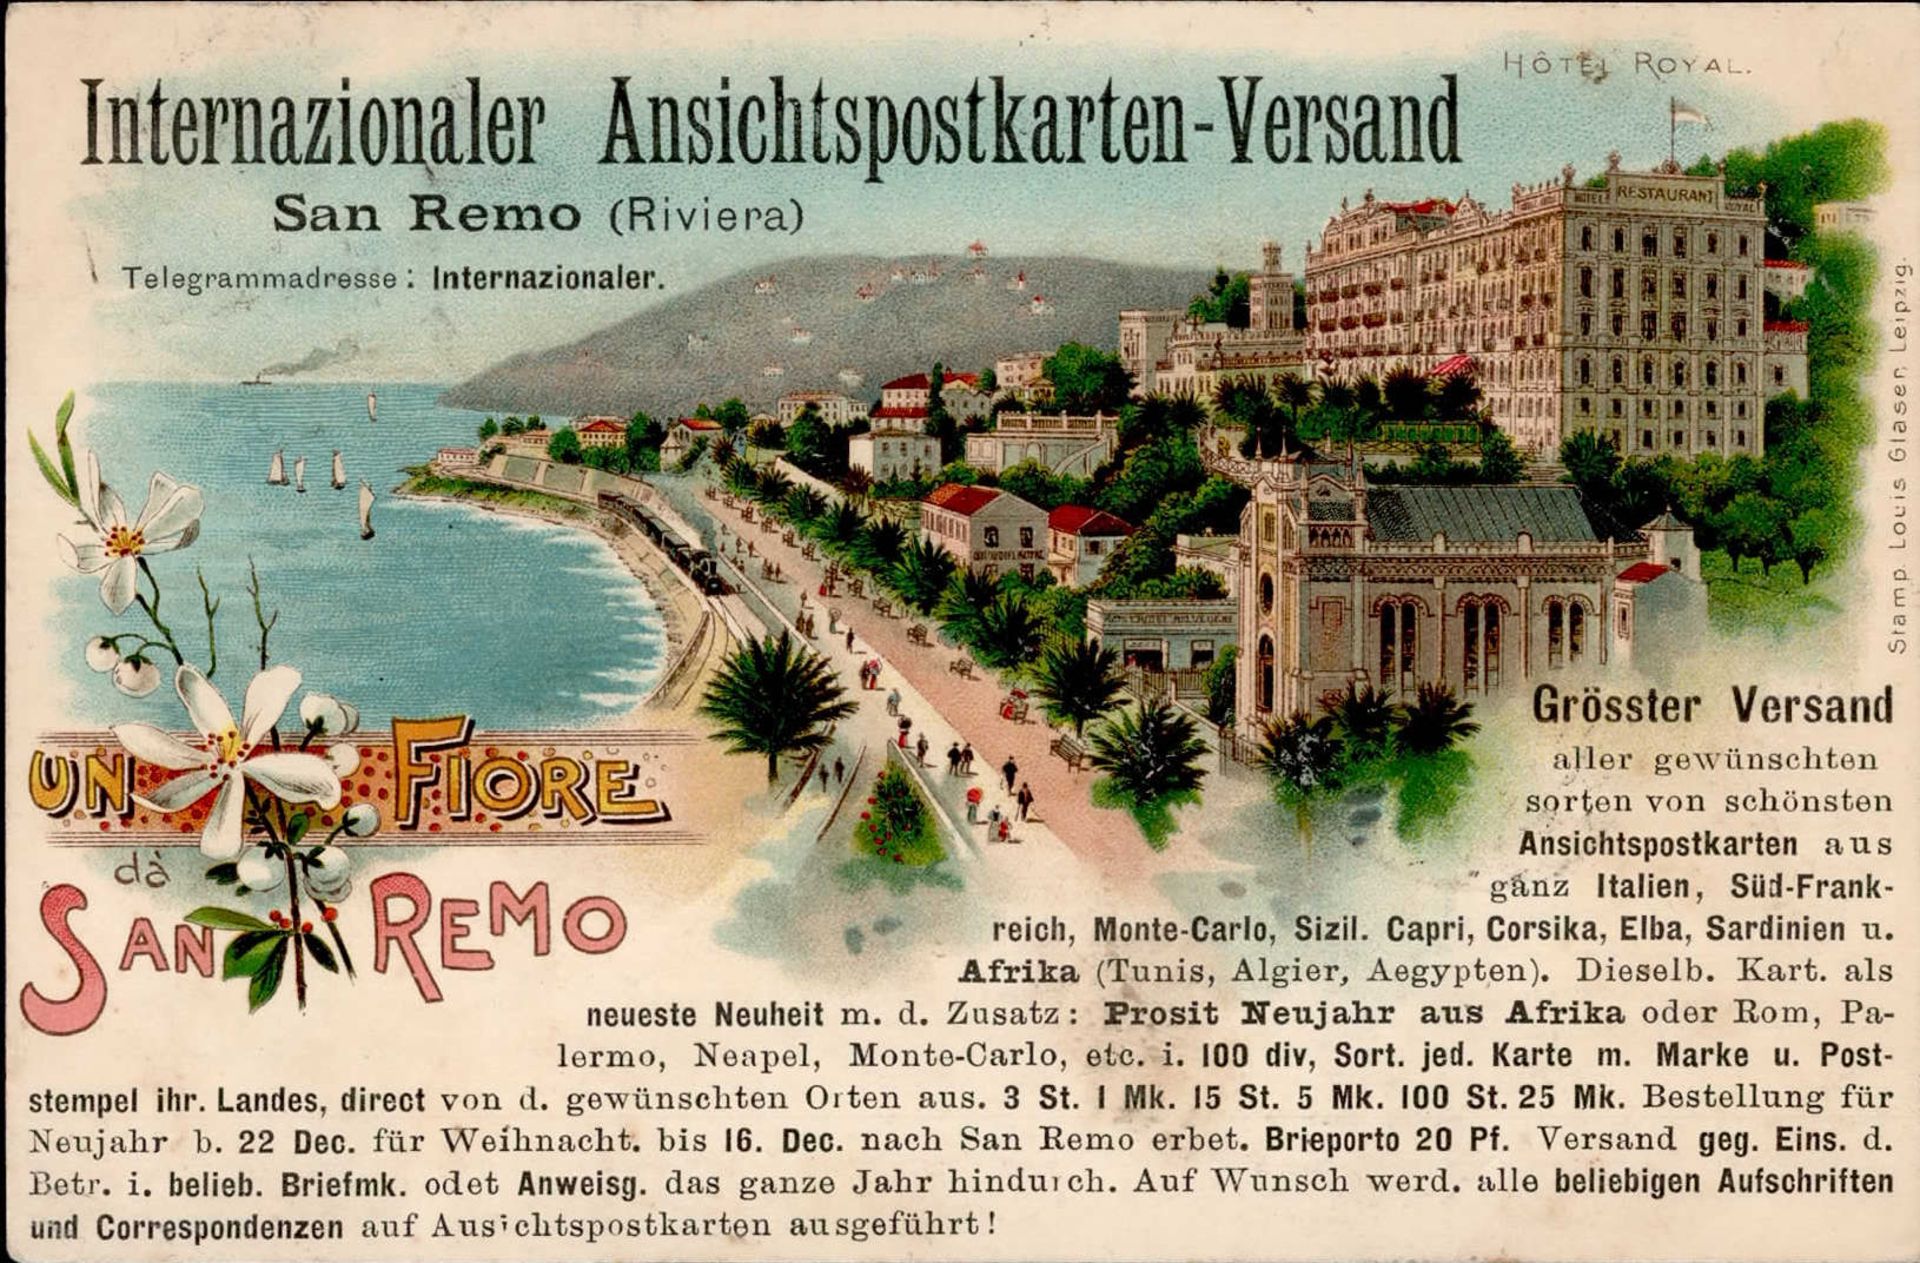 AK-Geschichte San Remo Internationaler Ansichtspostkarten-Versand I-II